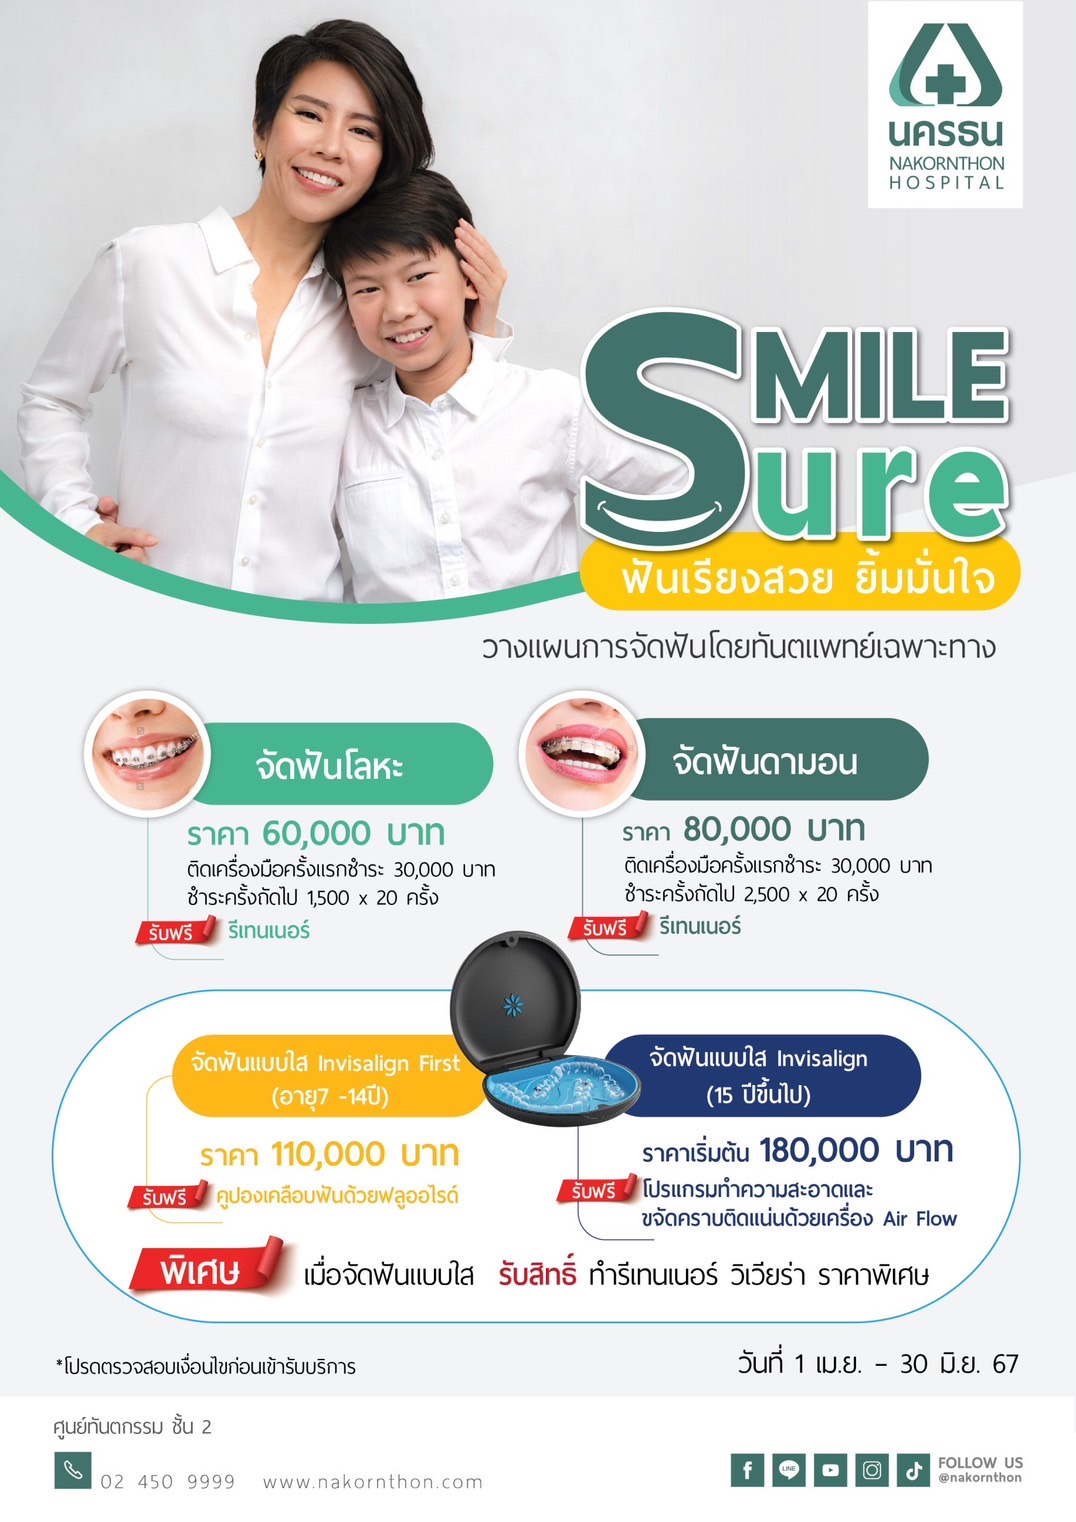 Smile Sure วางแผนจัดฟัน โดยทันตแพทย์เฉพาะทาง